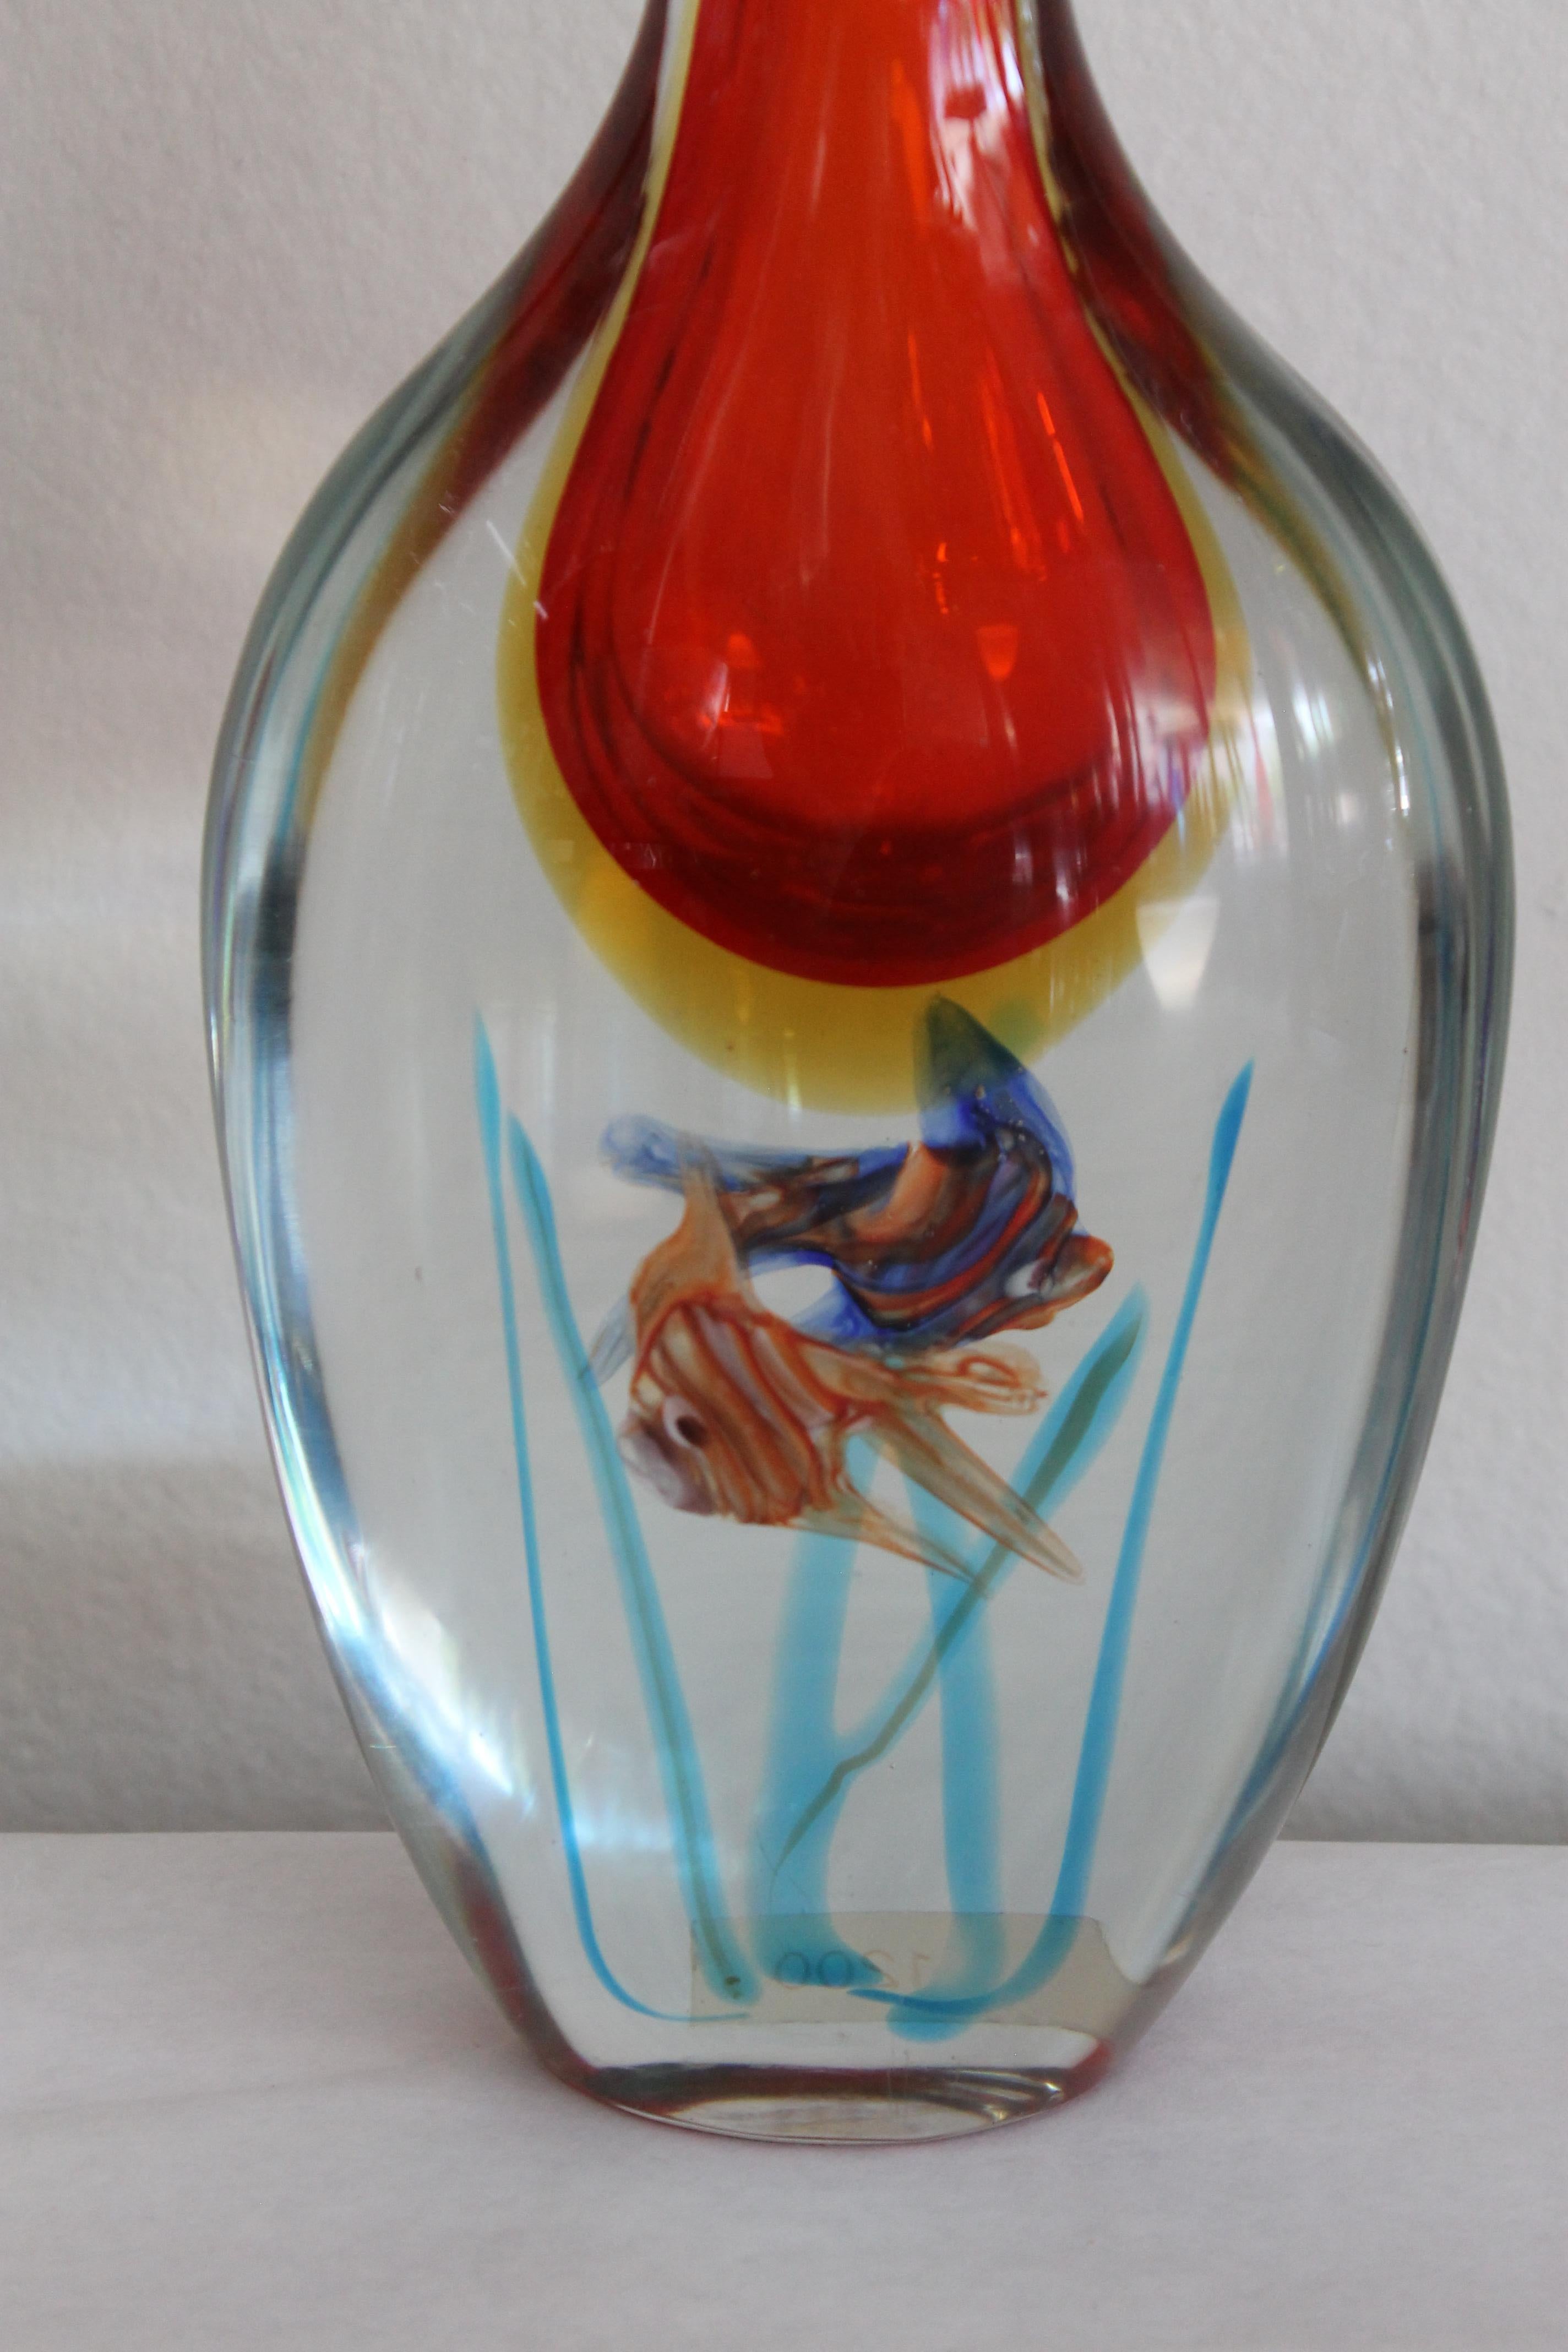 Murano mundgeblasenen Fisch Vase mit Farbe infundiert Barbini zugeschrieben.  Die Vase hat teilweise ein Label aus Murano.  Die Vase ist 6,5